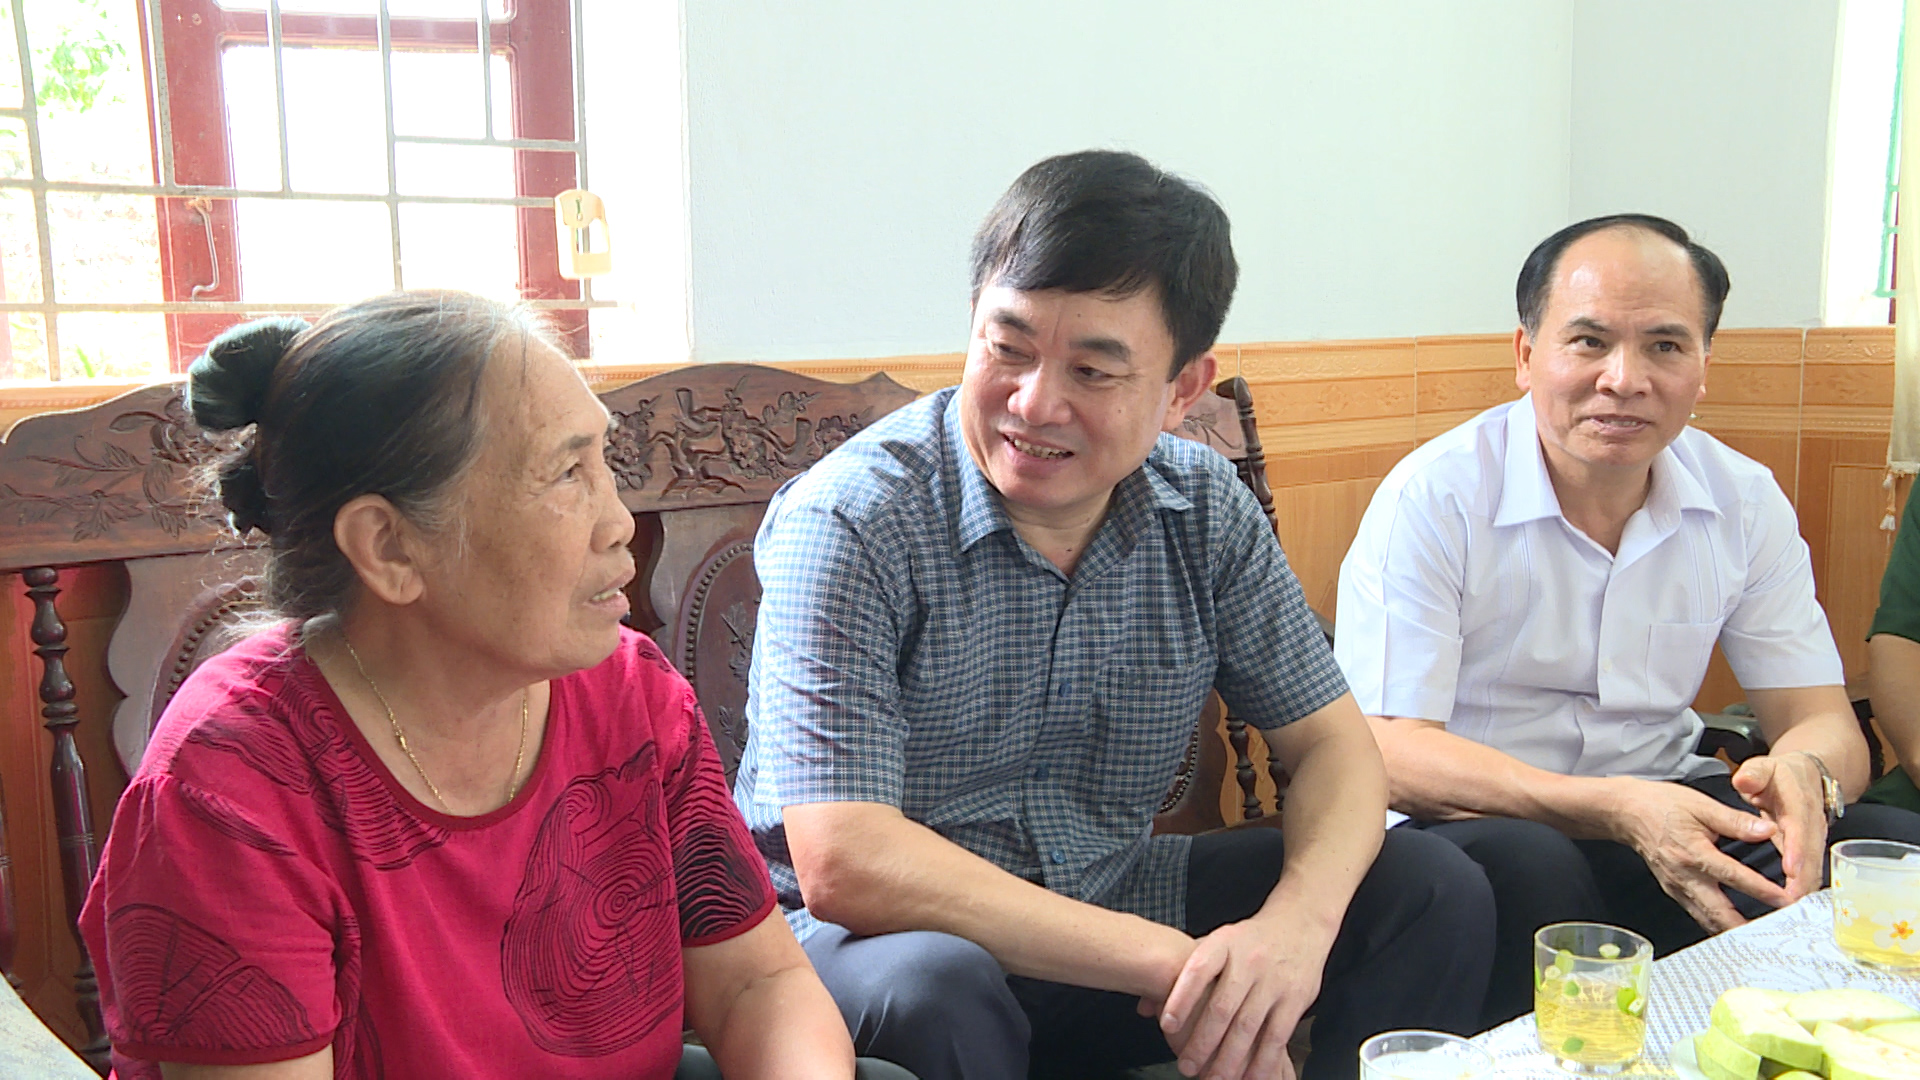 Đồng chí Ngô Hoàng Ngân thăm hỏi, trò chuyện với bà Mai Thị Phương, vợ liệt sĩ, phường Phương Đông.